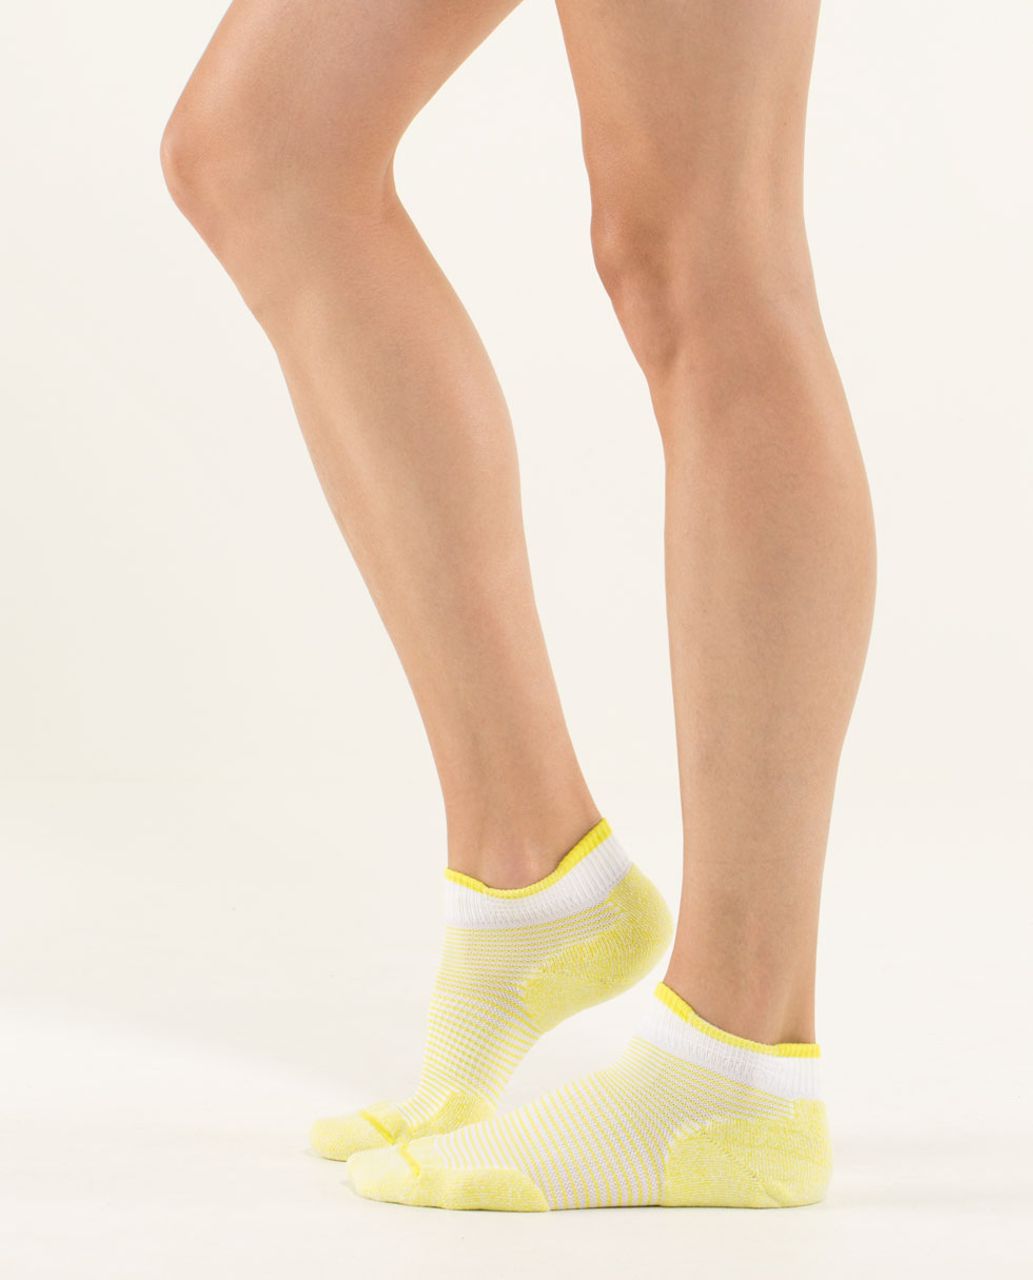 Lululemon Women's Ultimate Padded Run Sock - Hyper Stripe Split Pea White